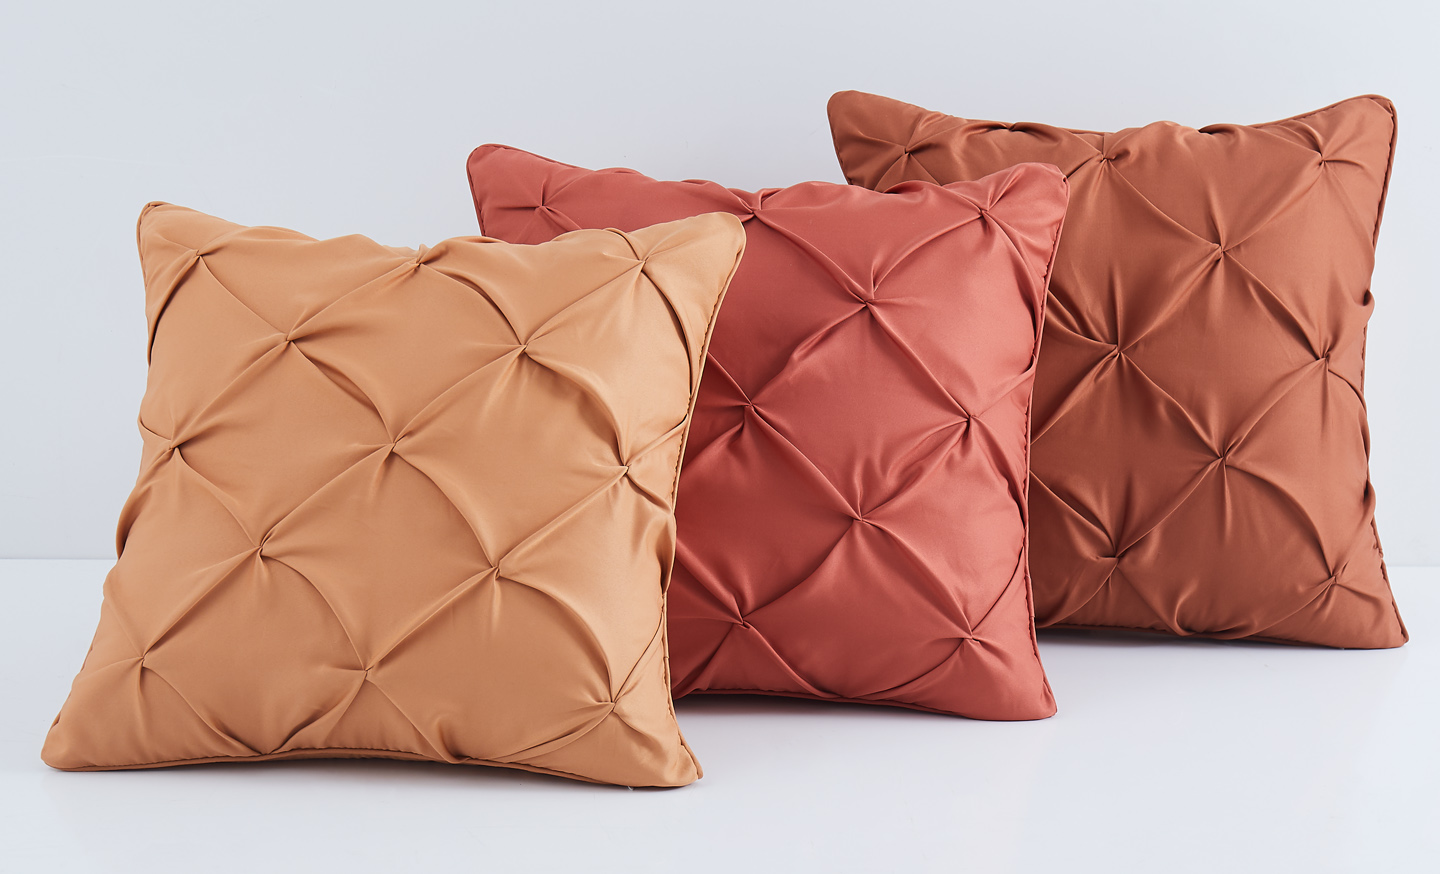 Berkshire 18 Luxe Velvetsoft Decorative Pillow 